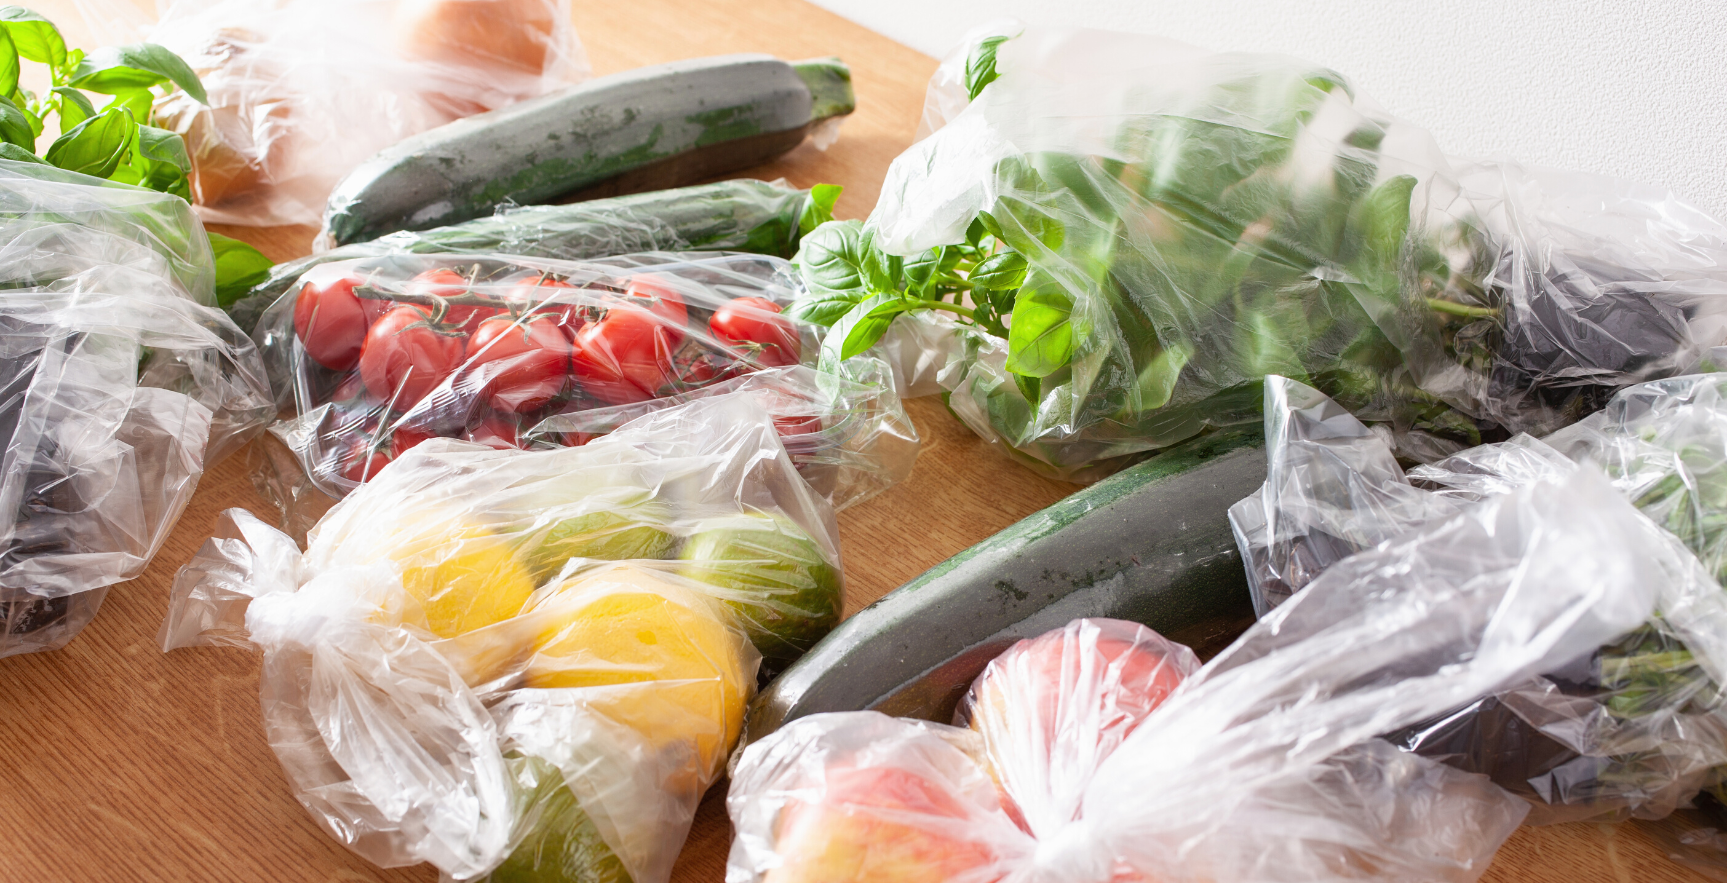 Seimas patvirtino: prekybininkai nuo liepos mėnesio turės apmokestinti ploniausius plastiko maišelius